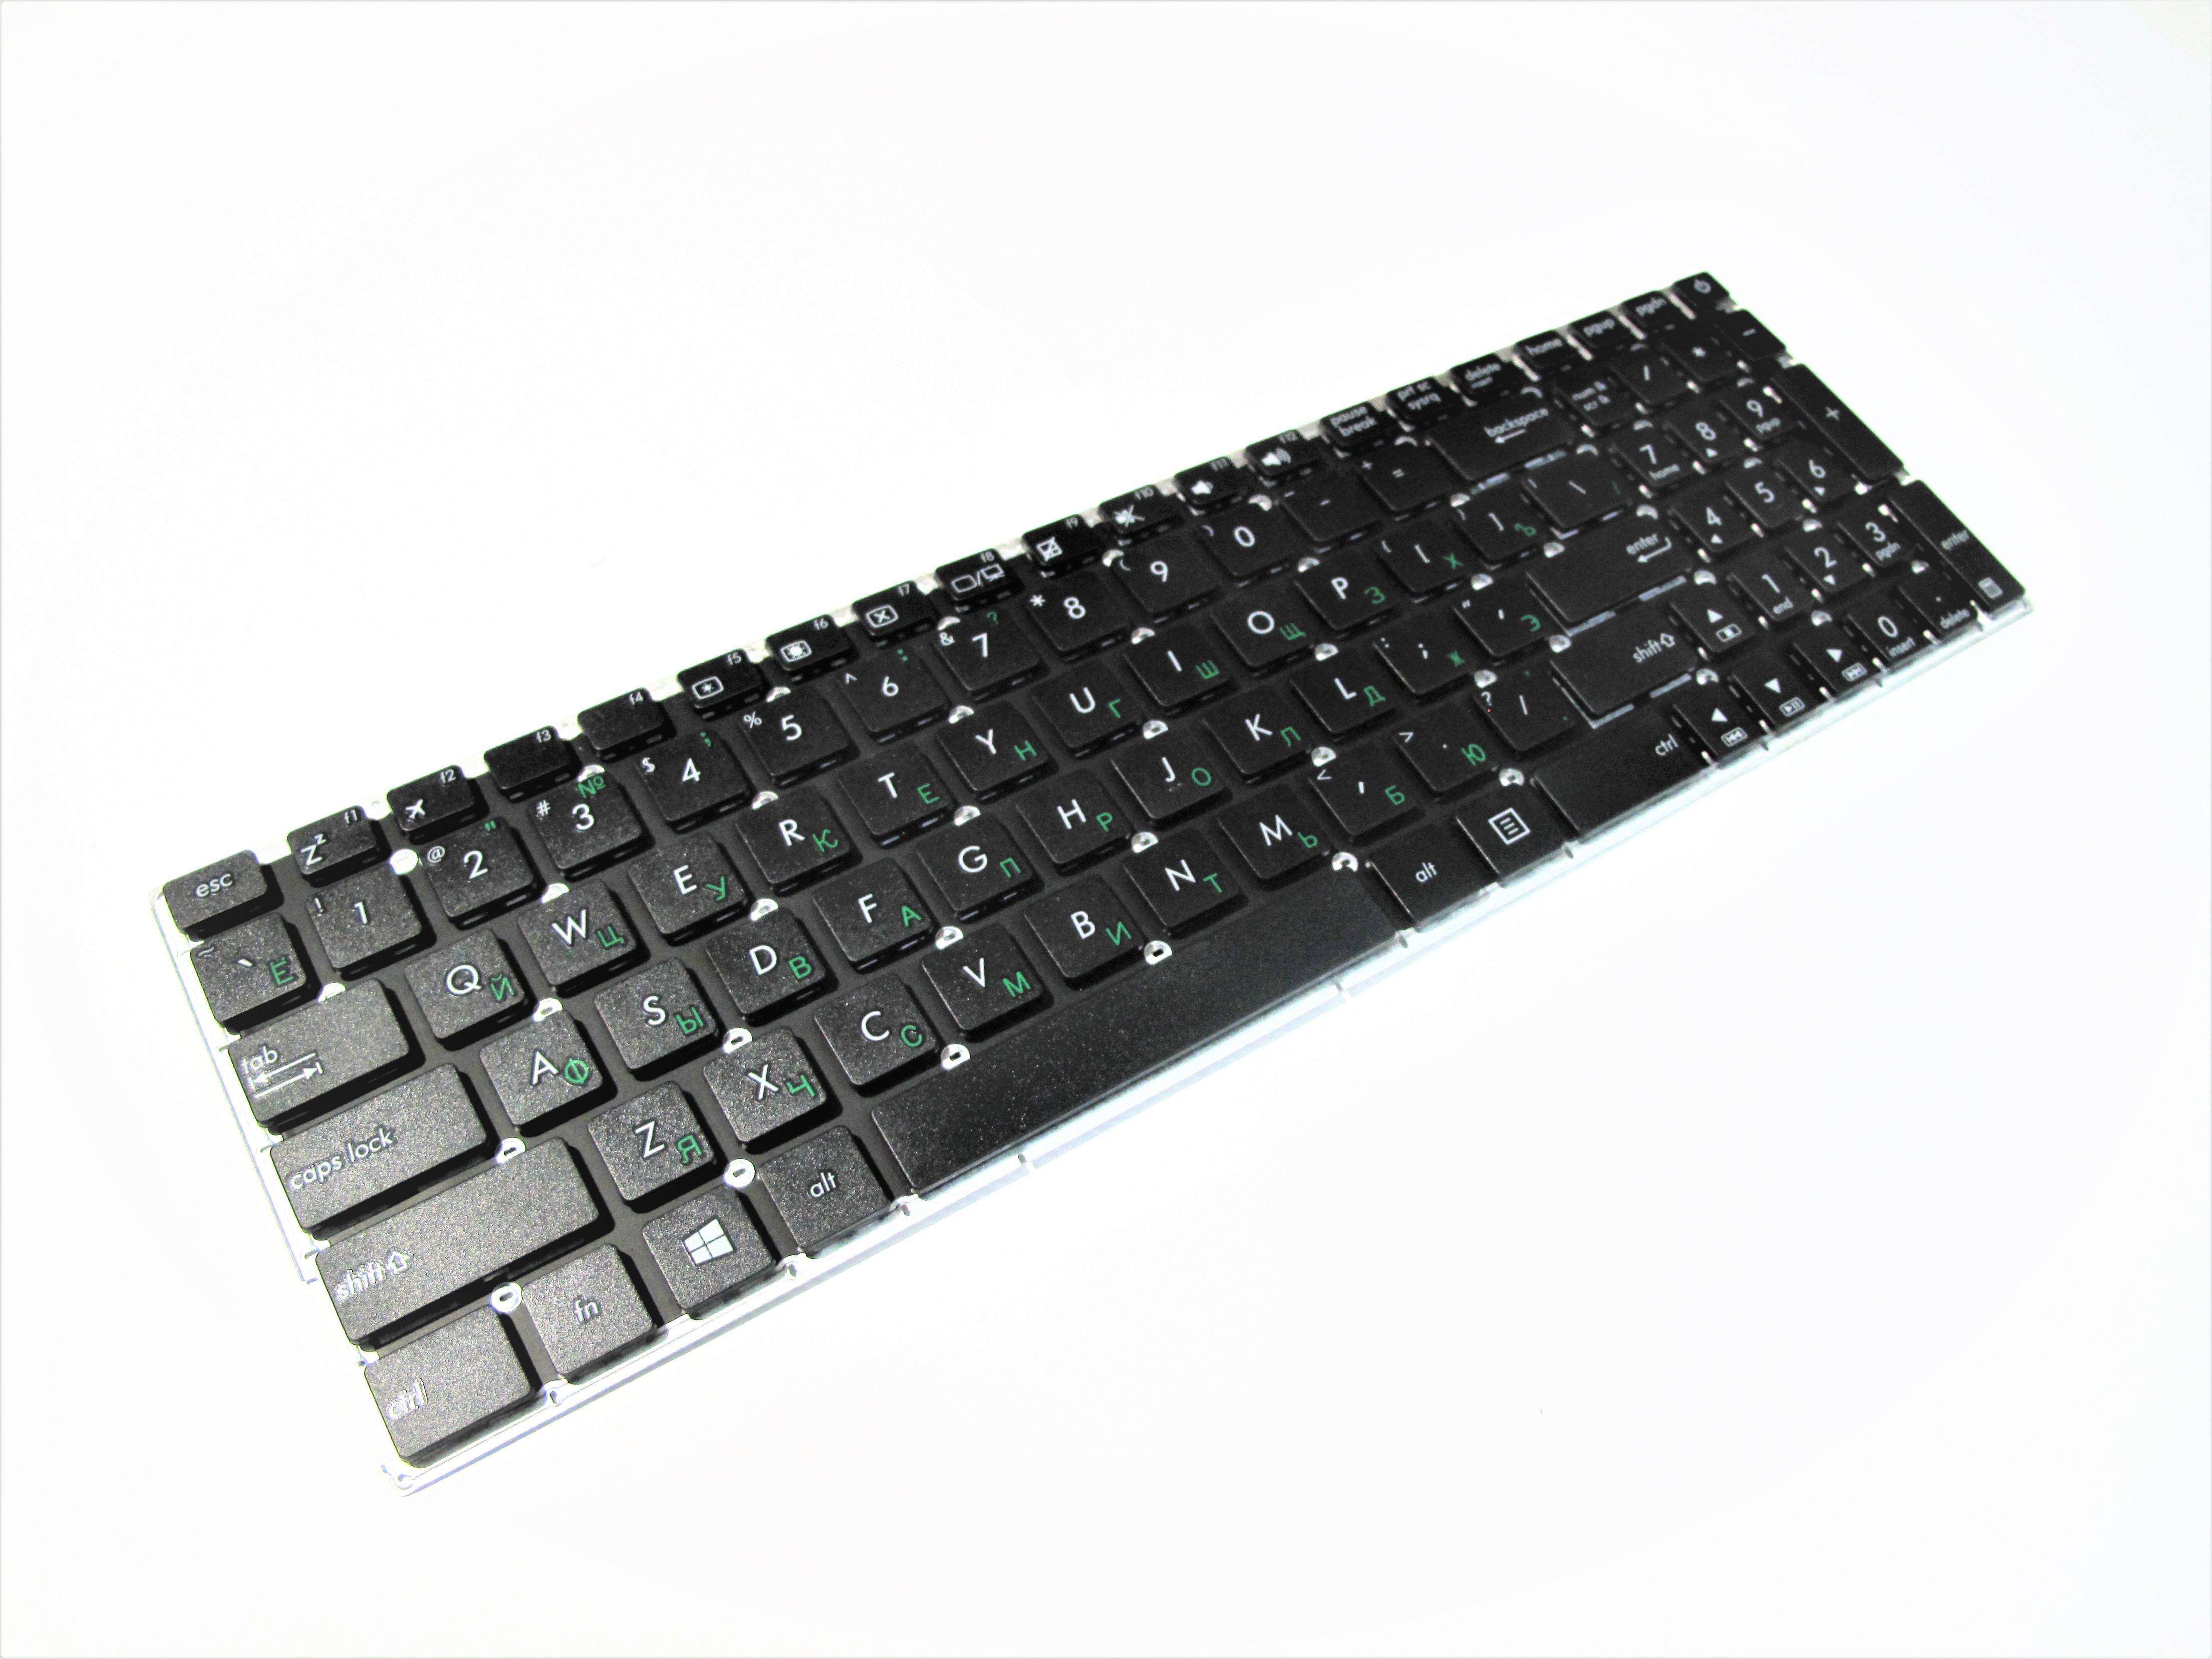 Kлавиатура для ноутбука ASUS X540/X554/X540L/X540LA Black RU (A21691)